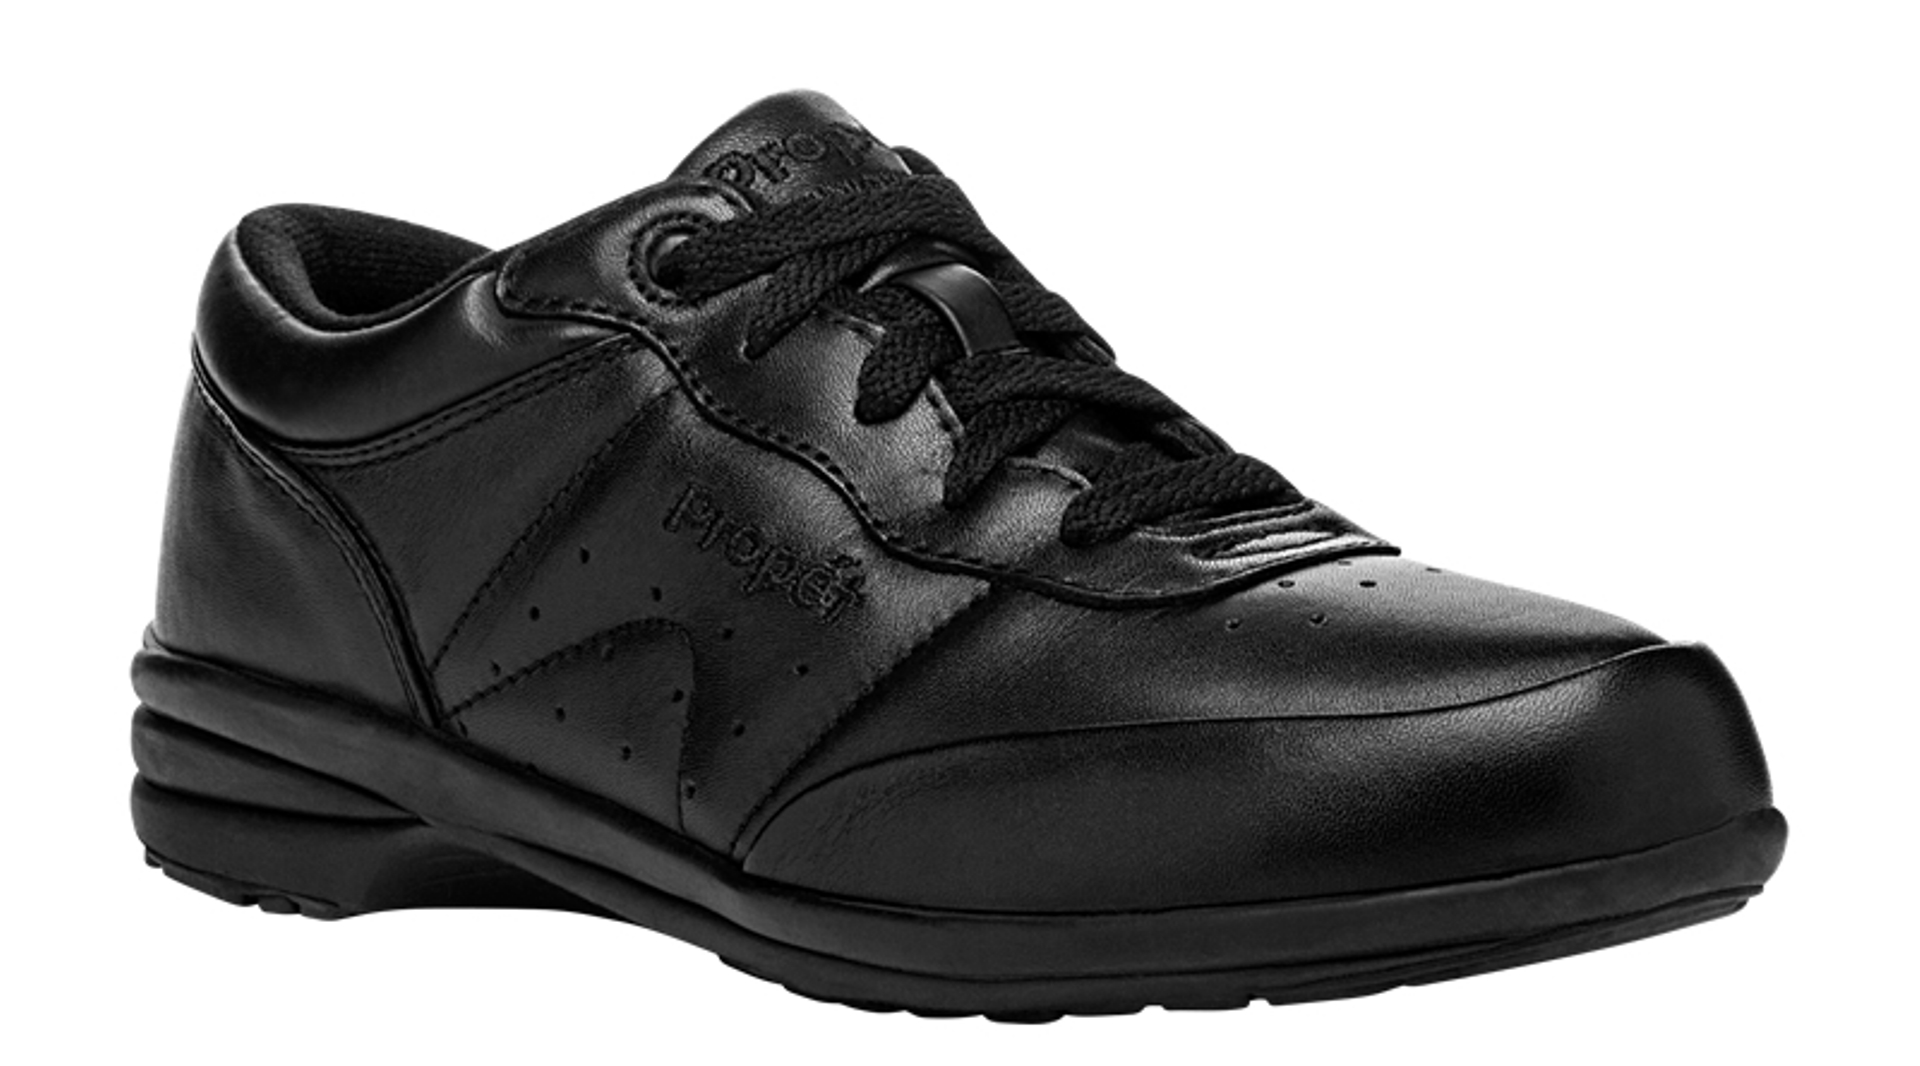 Propet Women's Washable Walker Black Sneaker - Wide Widths Available